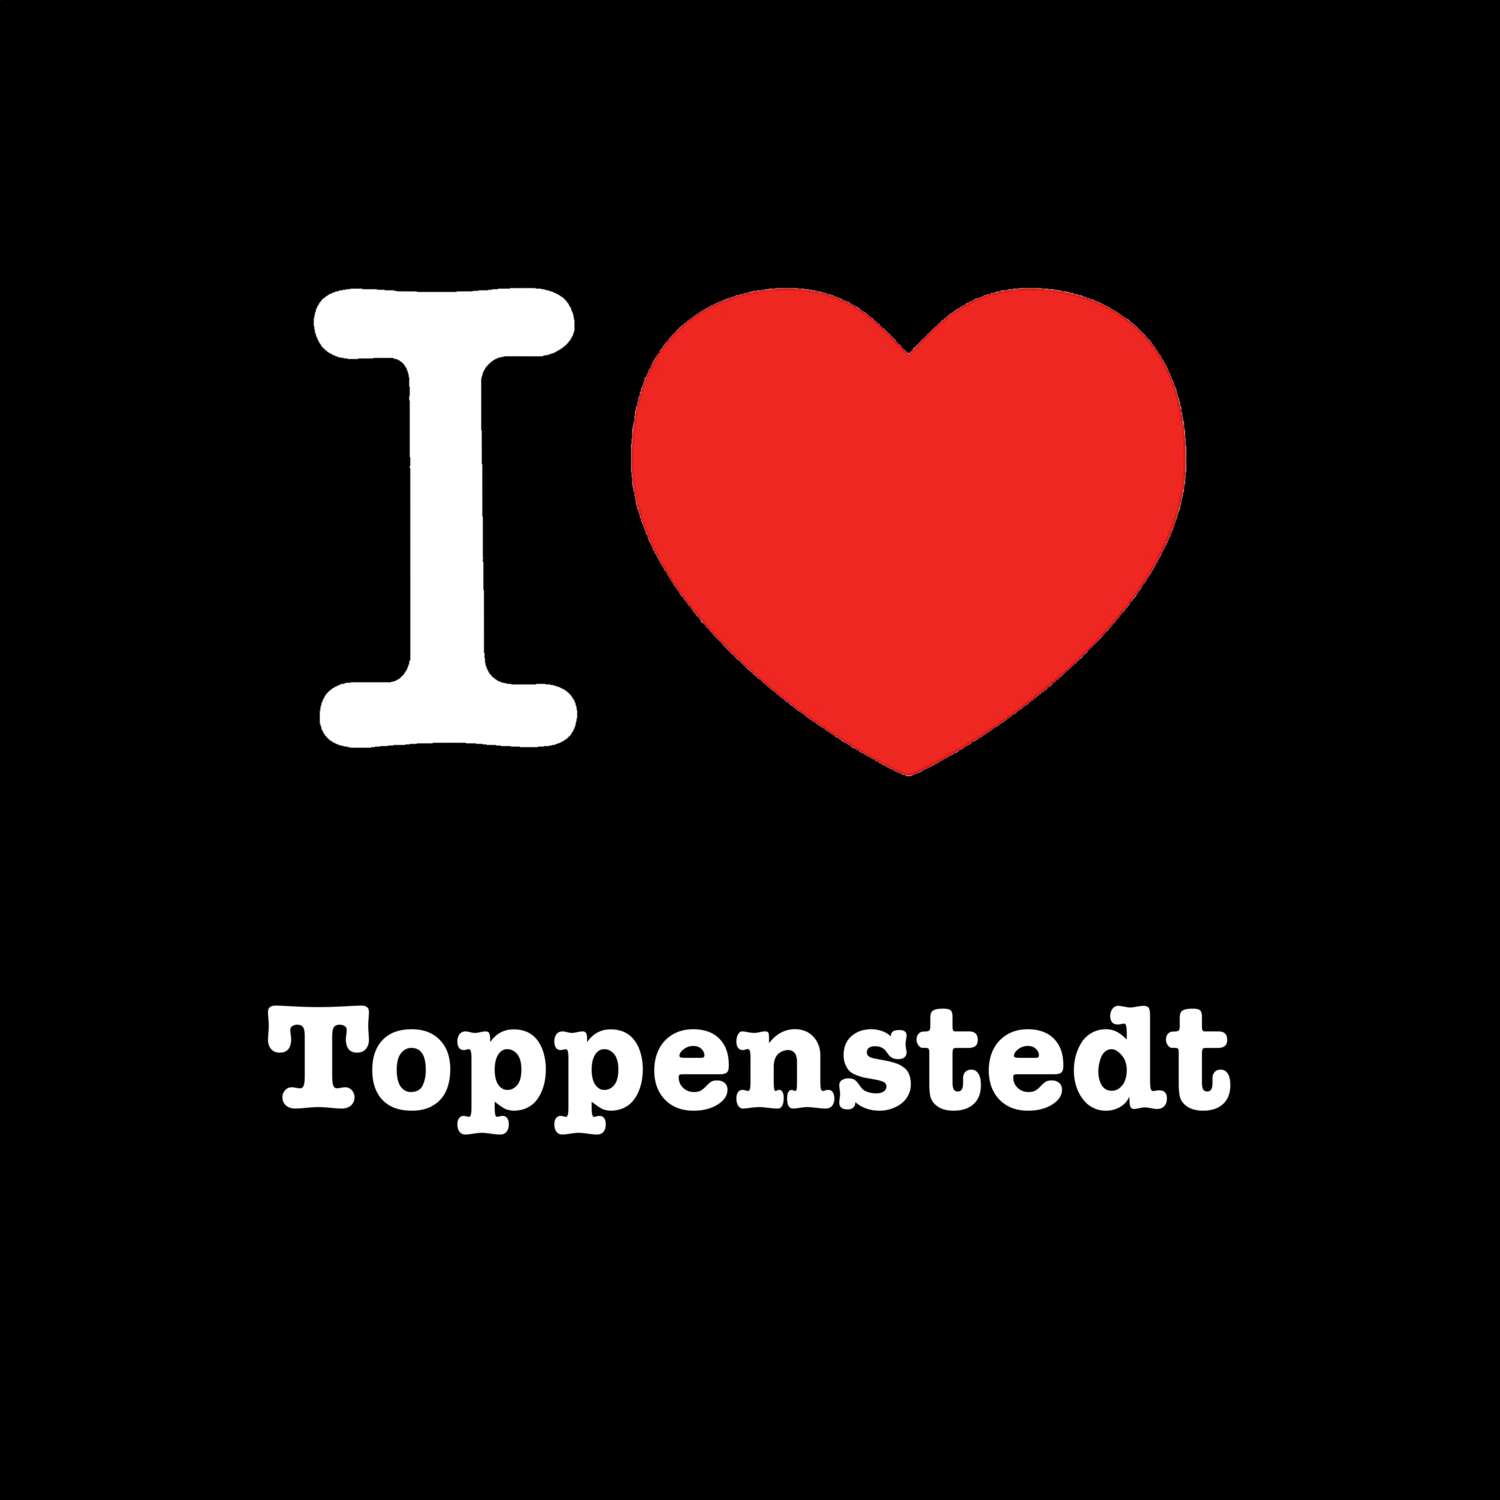 Toppenstedt T-Shirt »I love«